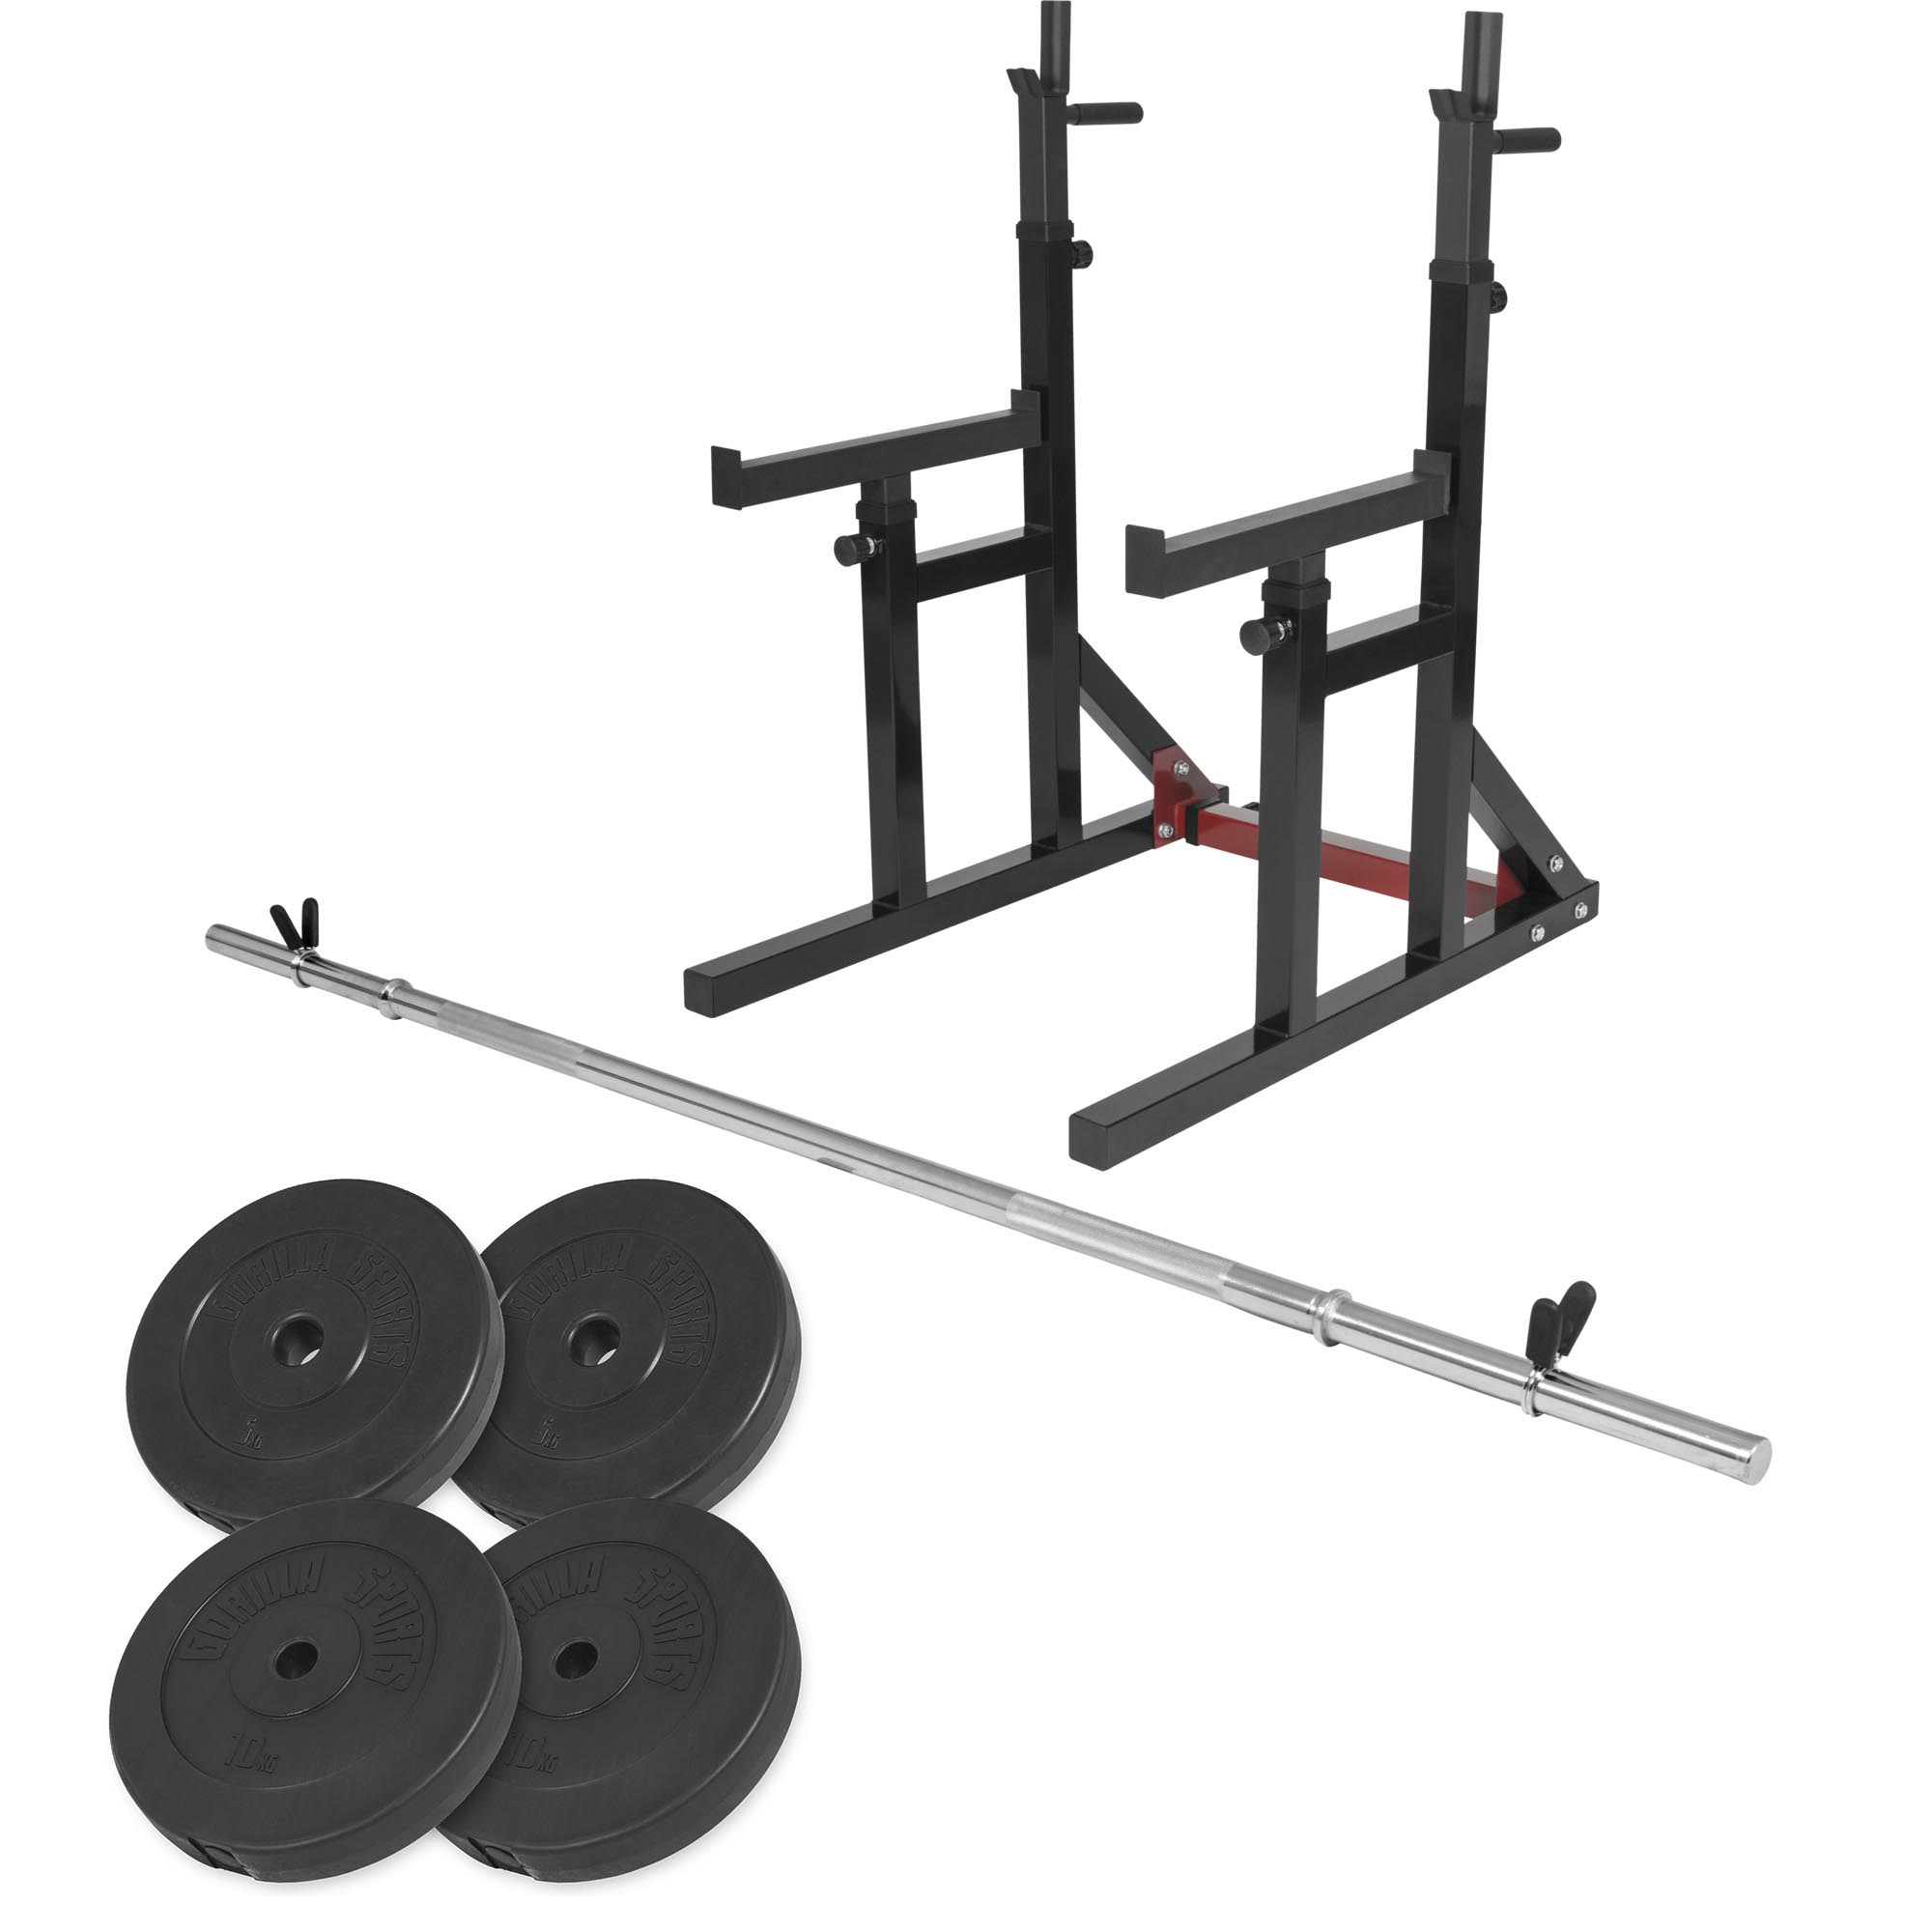 Squat rack avec barre longue de 170cm (30mm) avec stop disques et 30kg des poids (2x5kg et 2x10kg) en plastique et 31mm diamÃ¨tre